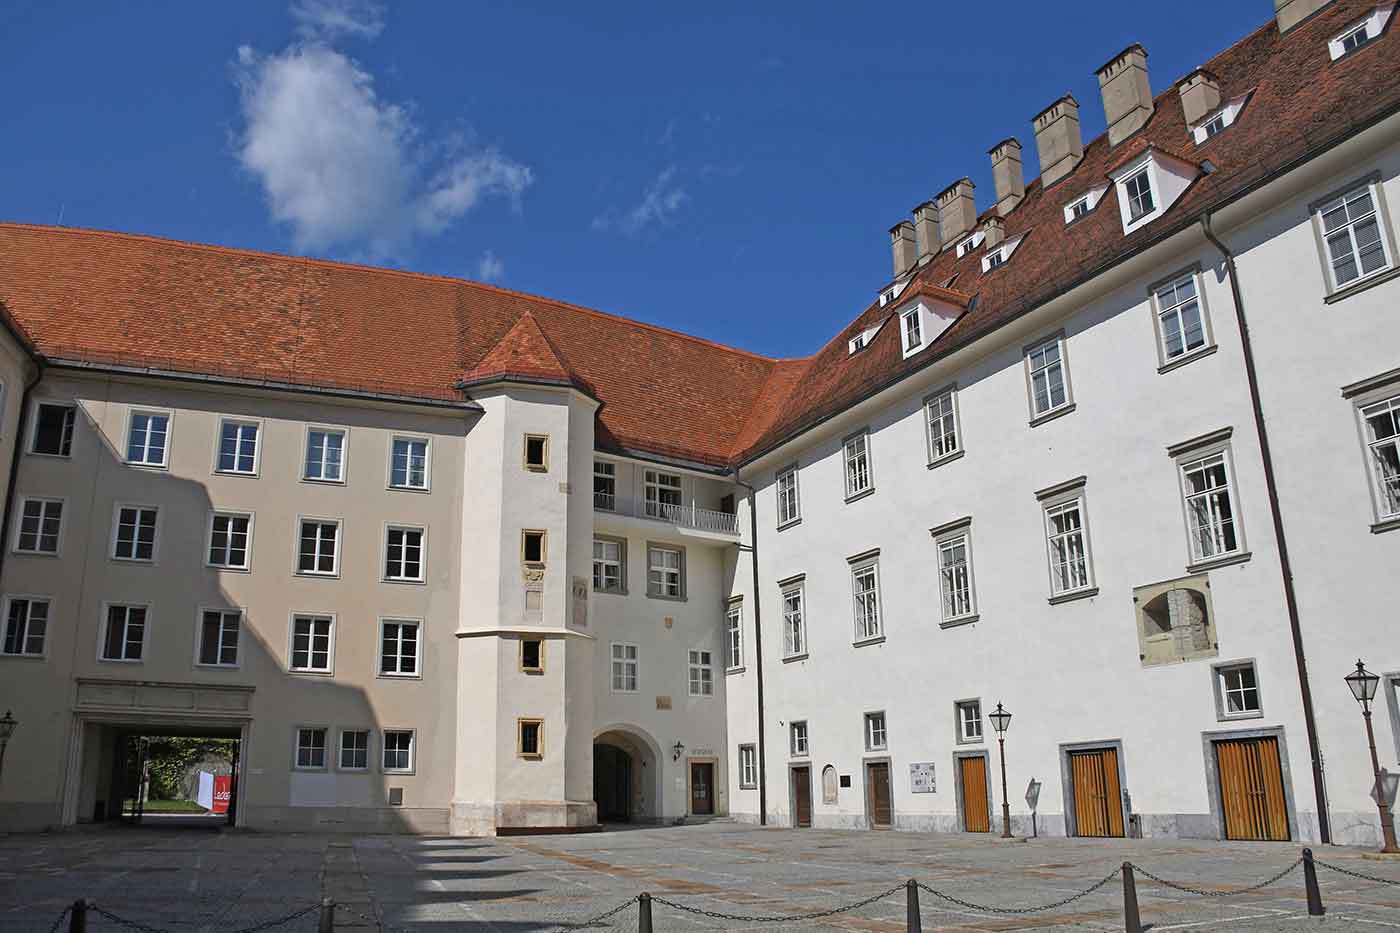 Castle of Graz